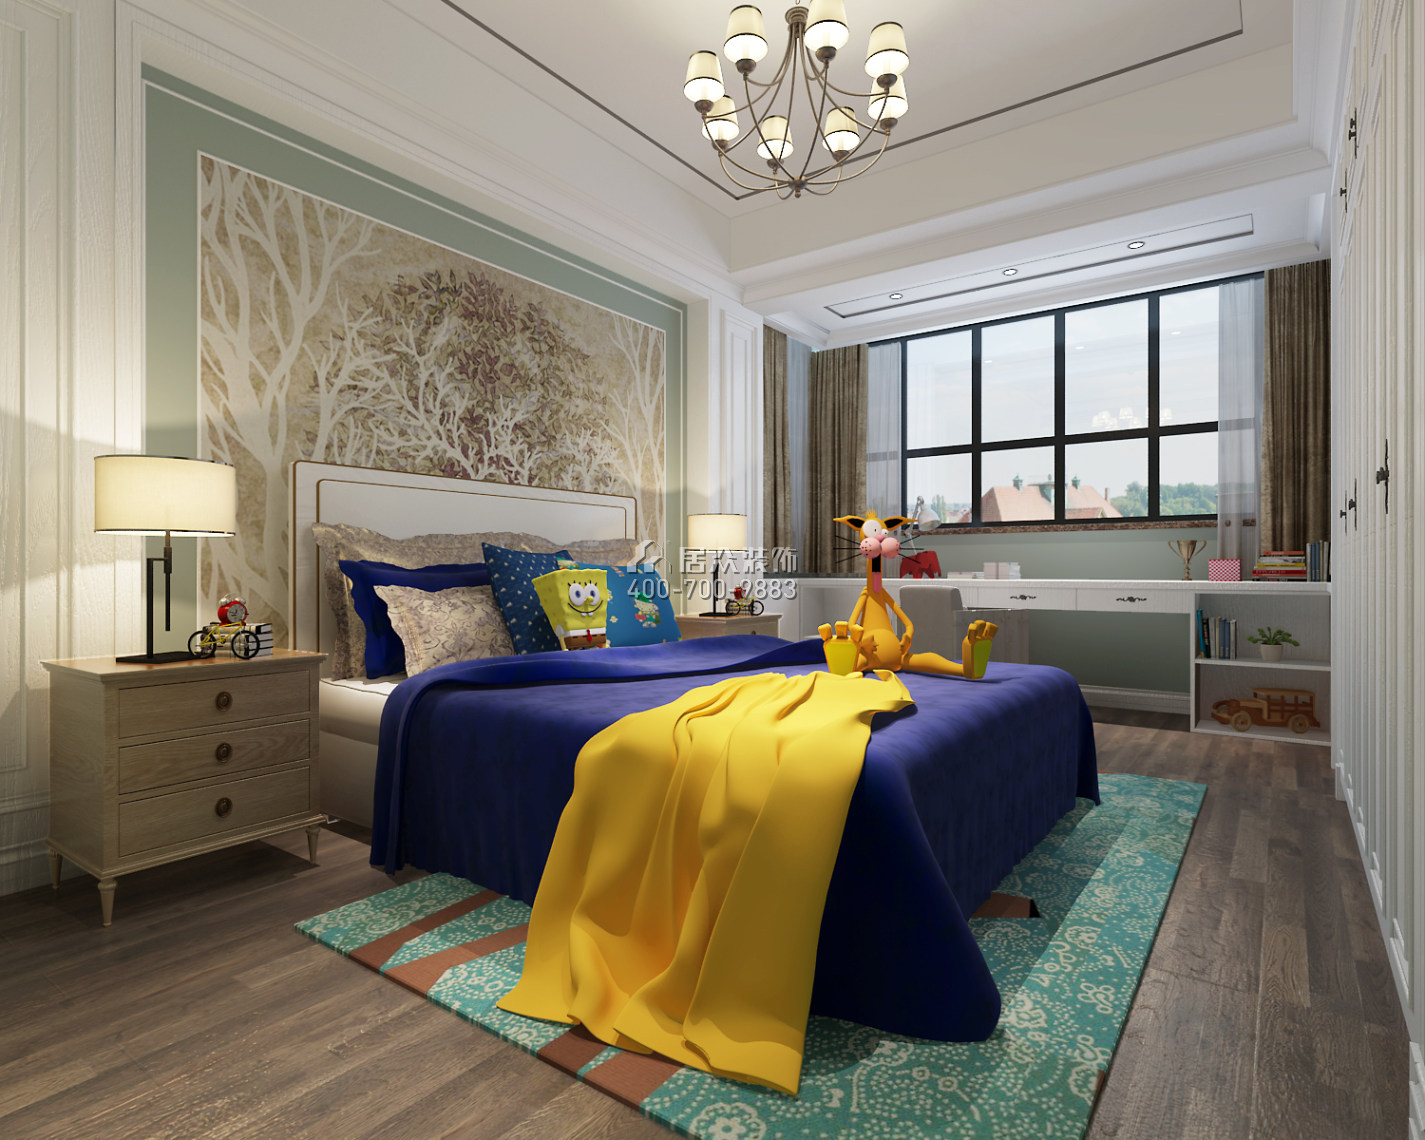 濱湖名苑177平方米美式風格平層戶型臥室裝修效果圖